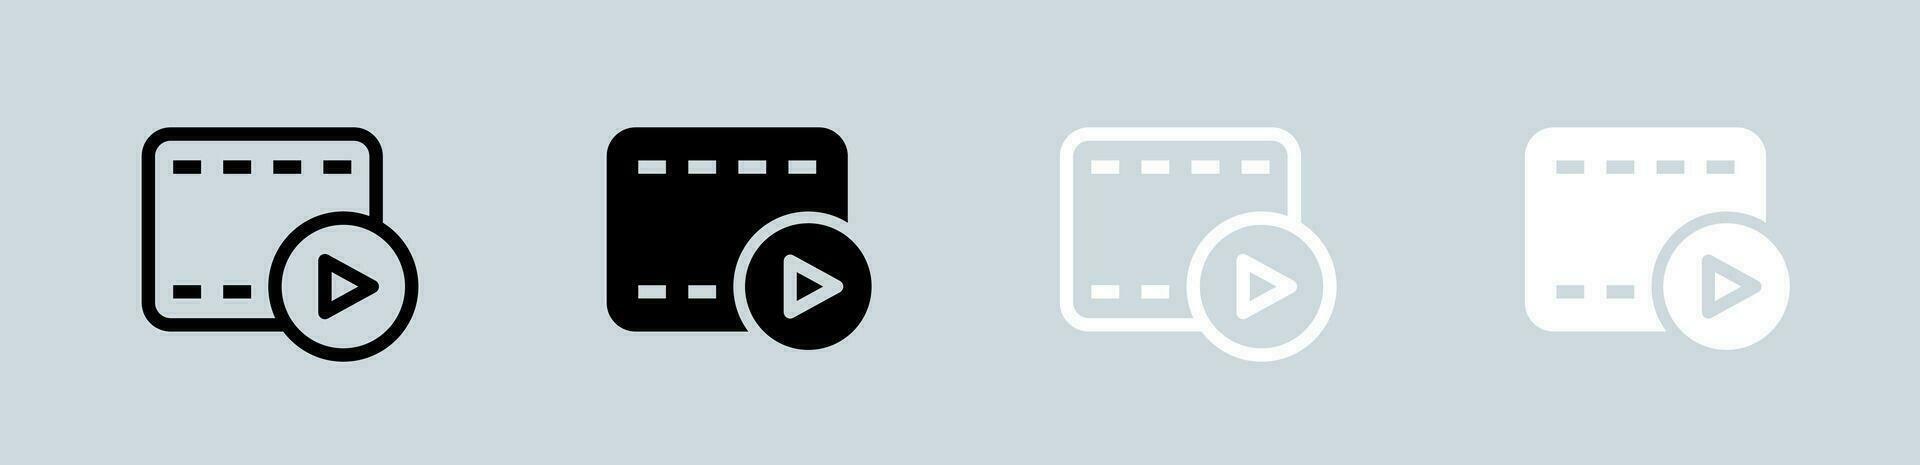 bio ikon uppsättning i svart och vit. video tecken vektor illustration.